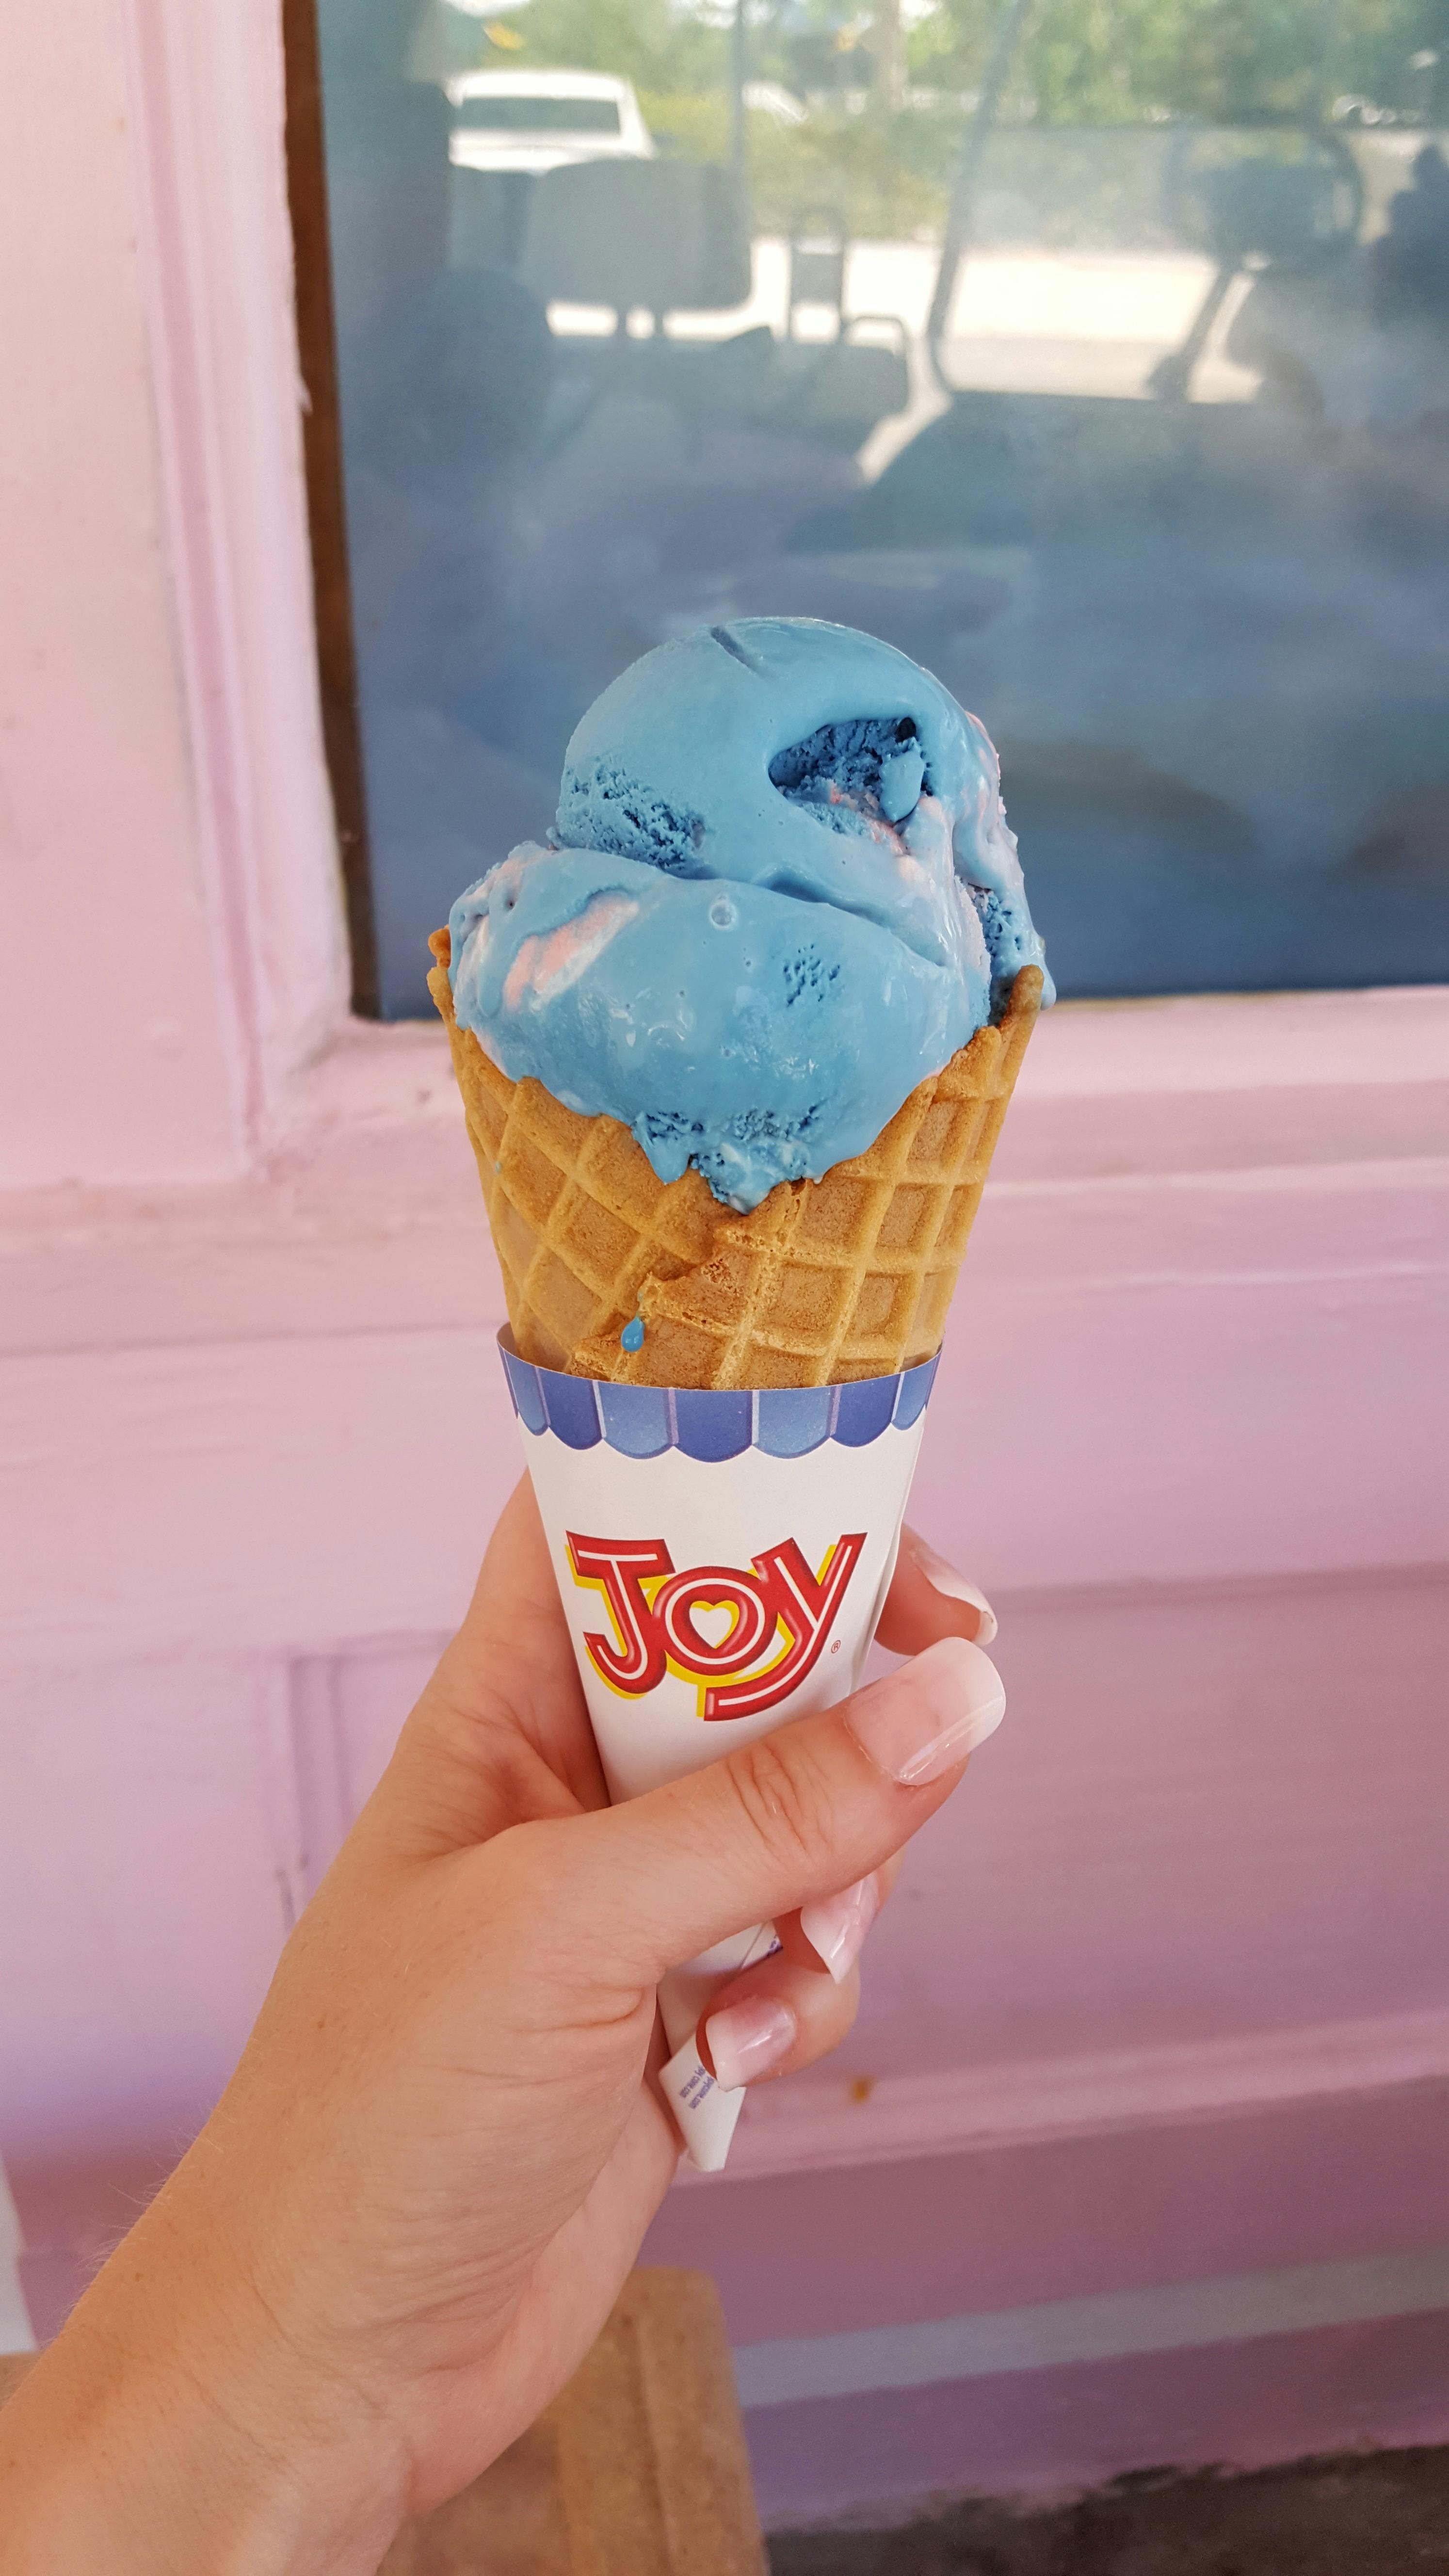 Free stock photo of ice cream, ice cream cone